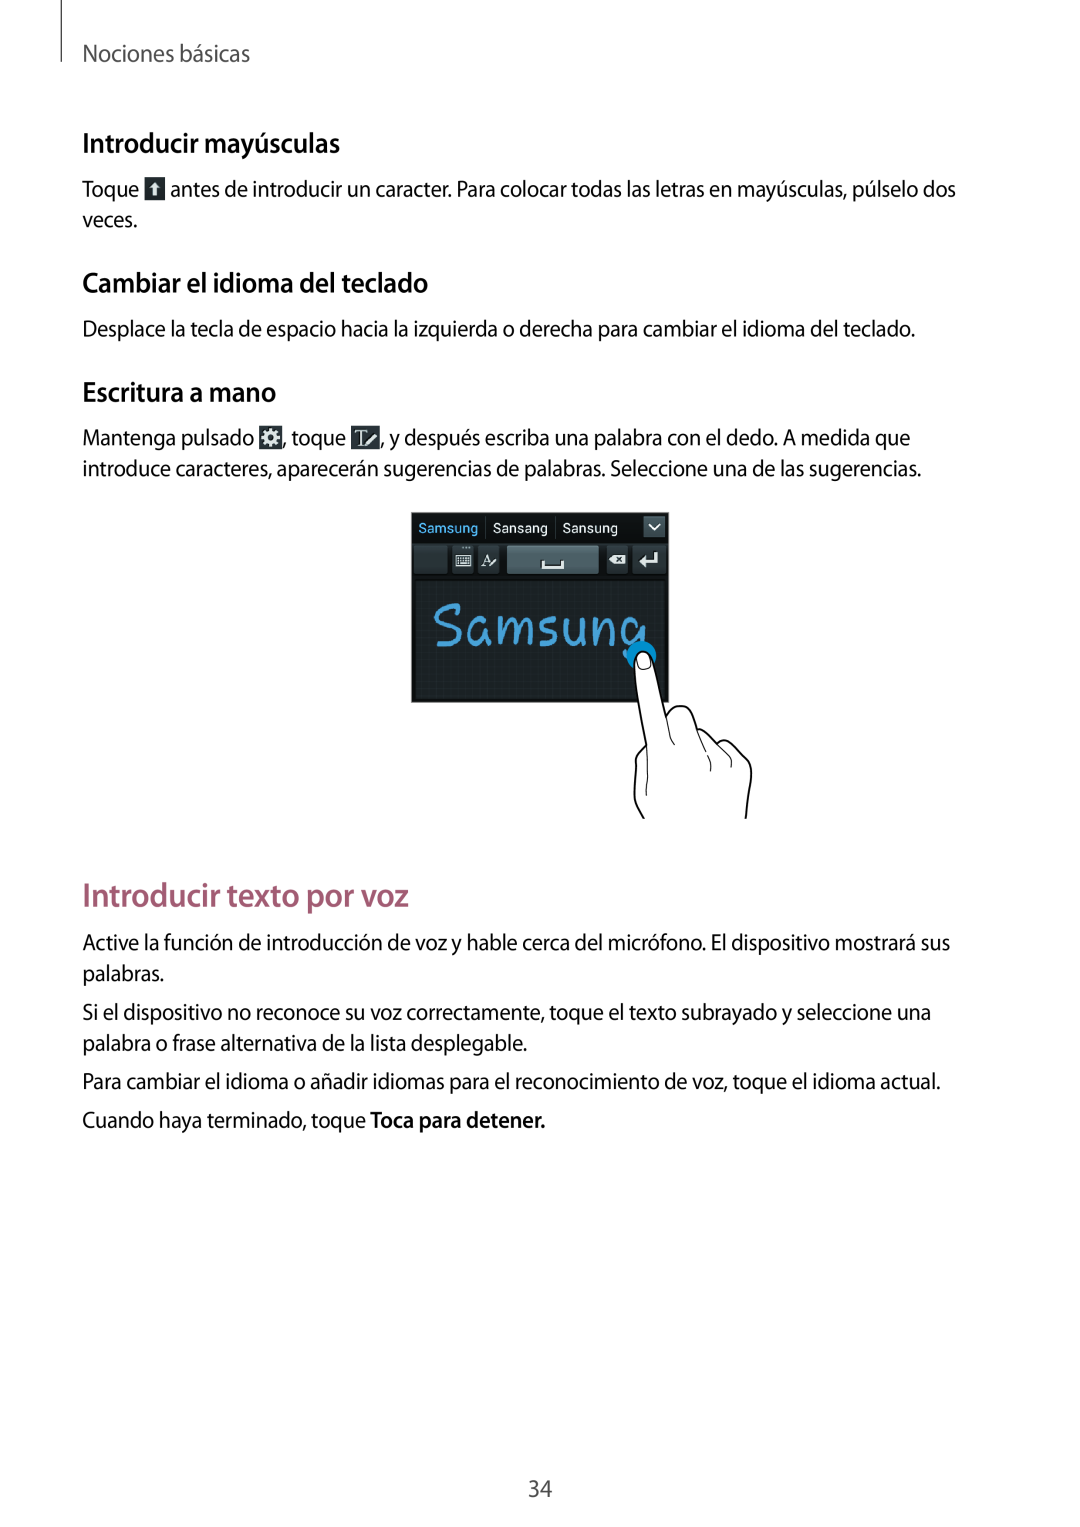 Samsung GT-I9105UANXEO Introducir texto por voz, Introducir mayúsculas, Cambiar el idioma del teclado, Escritura a mano 